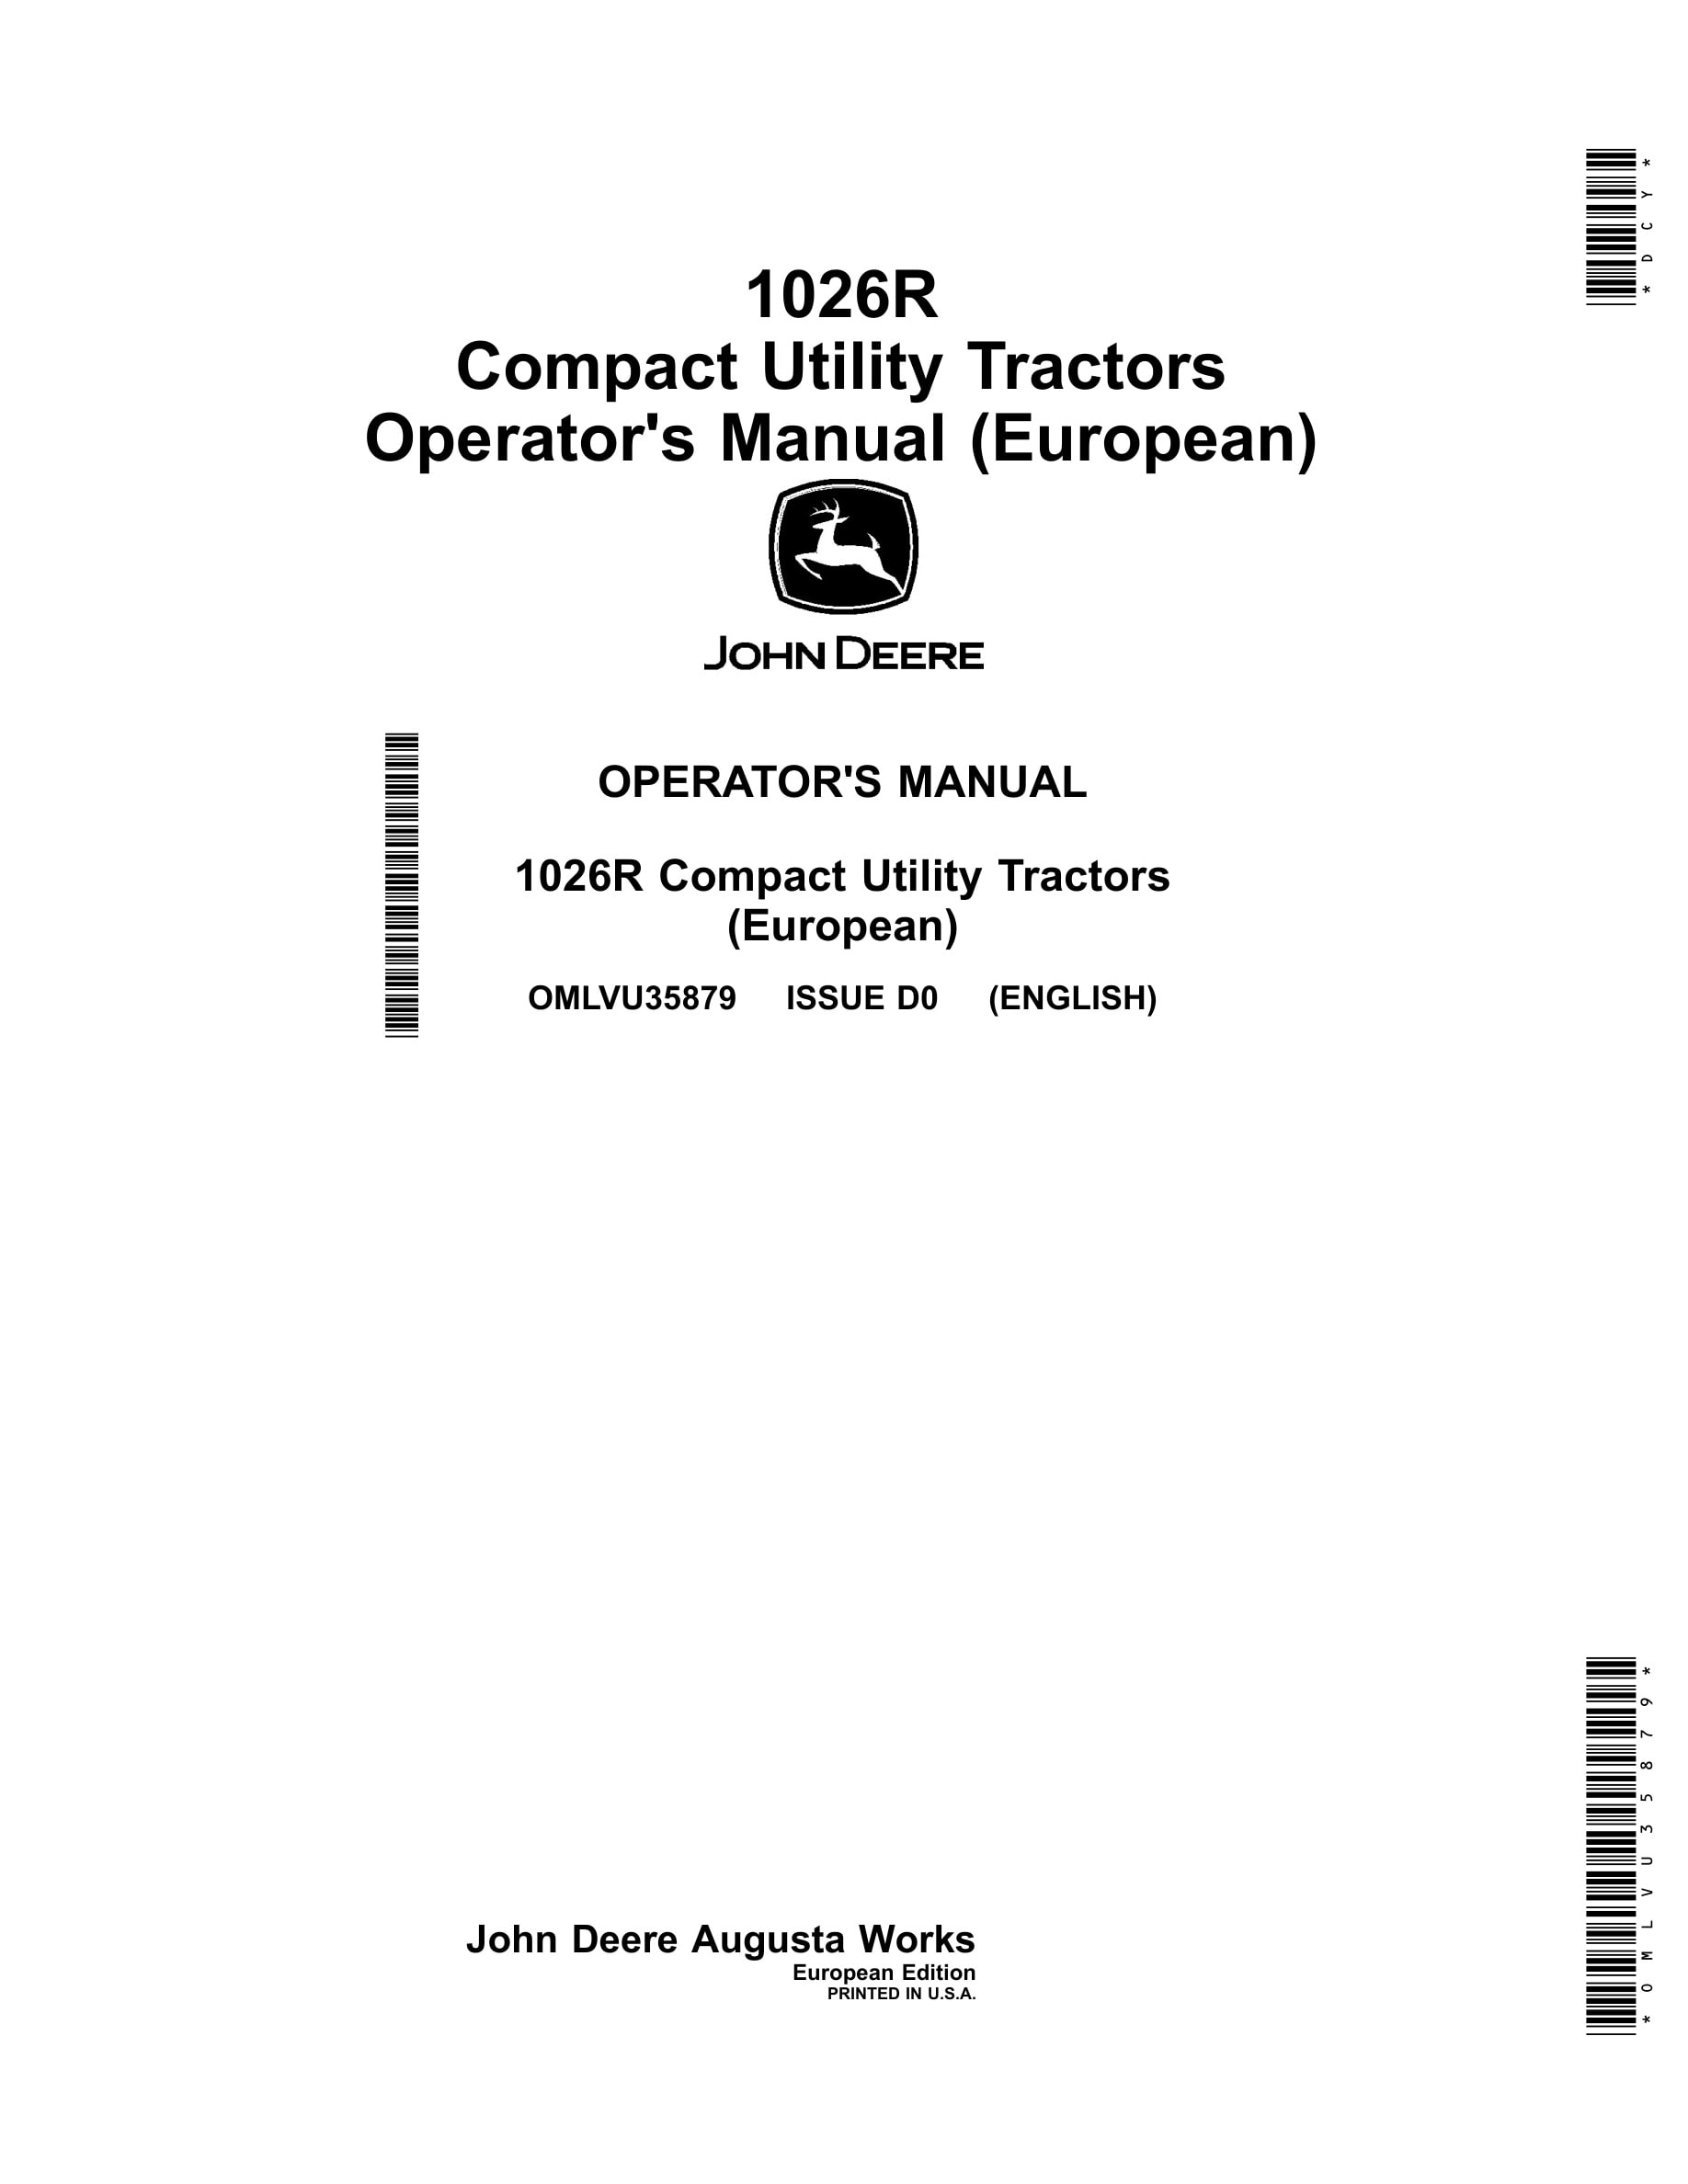 John Deere 1026r Compact Utility Tractors Operator Manuals OMLVU35879-1